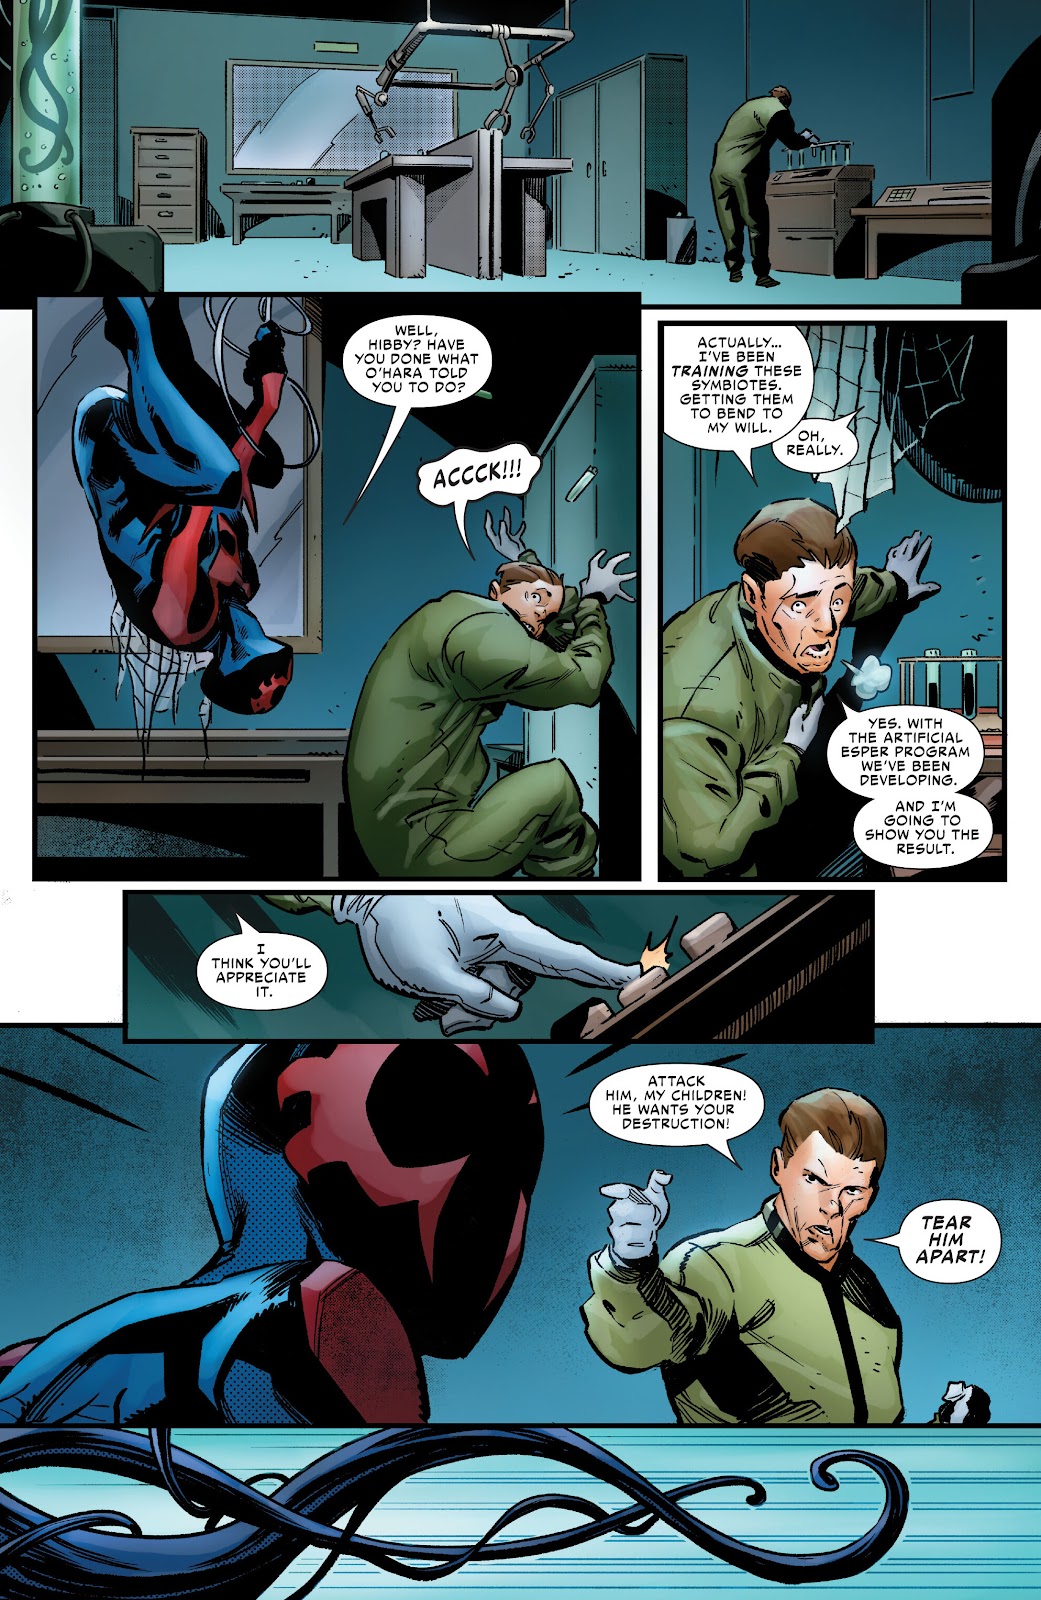 Symbiote Spider-Man 2099 issue 1 - Page 20